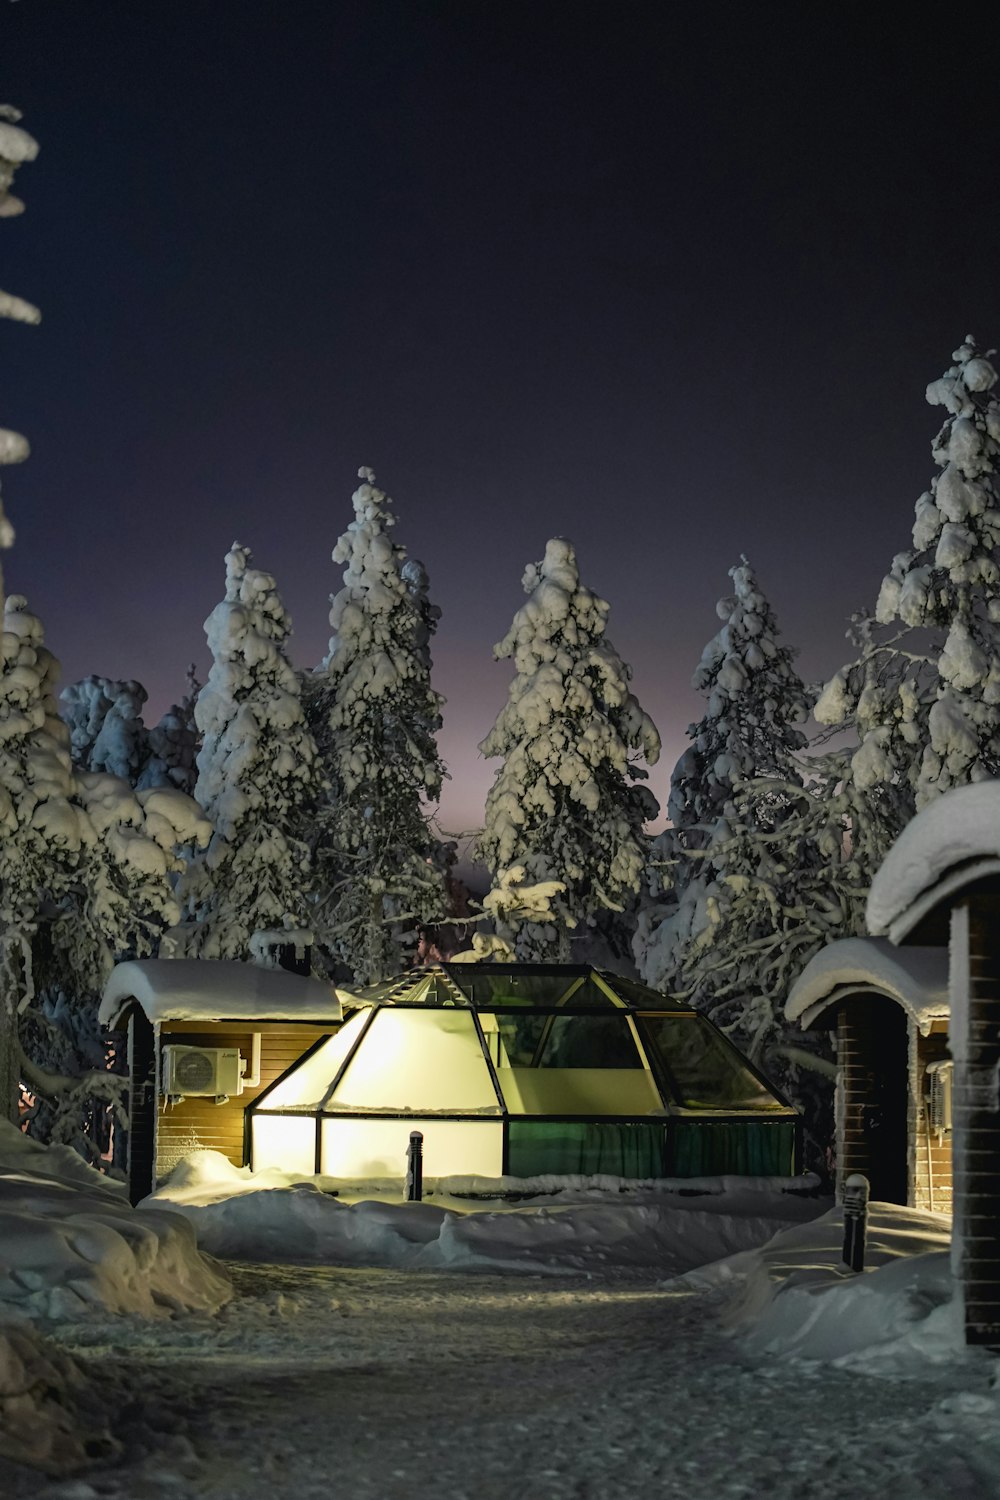 Una escena nocturna de una cabaña en el bosque